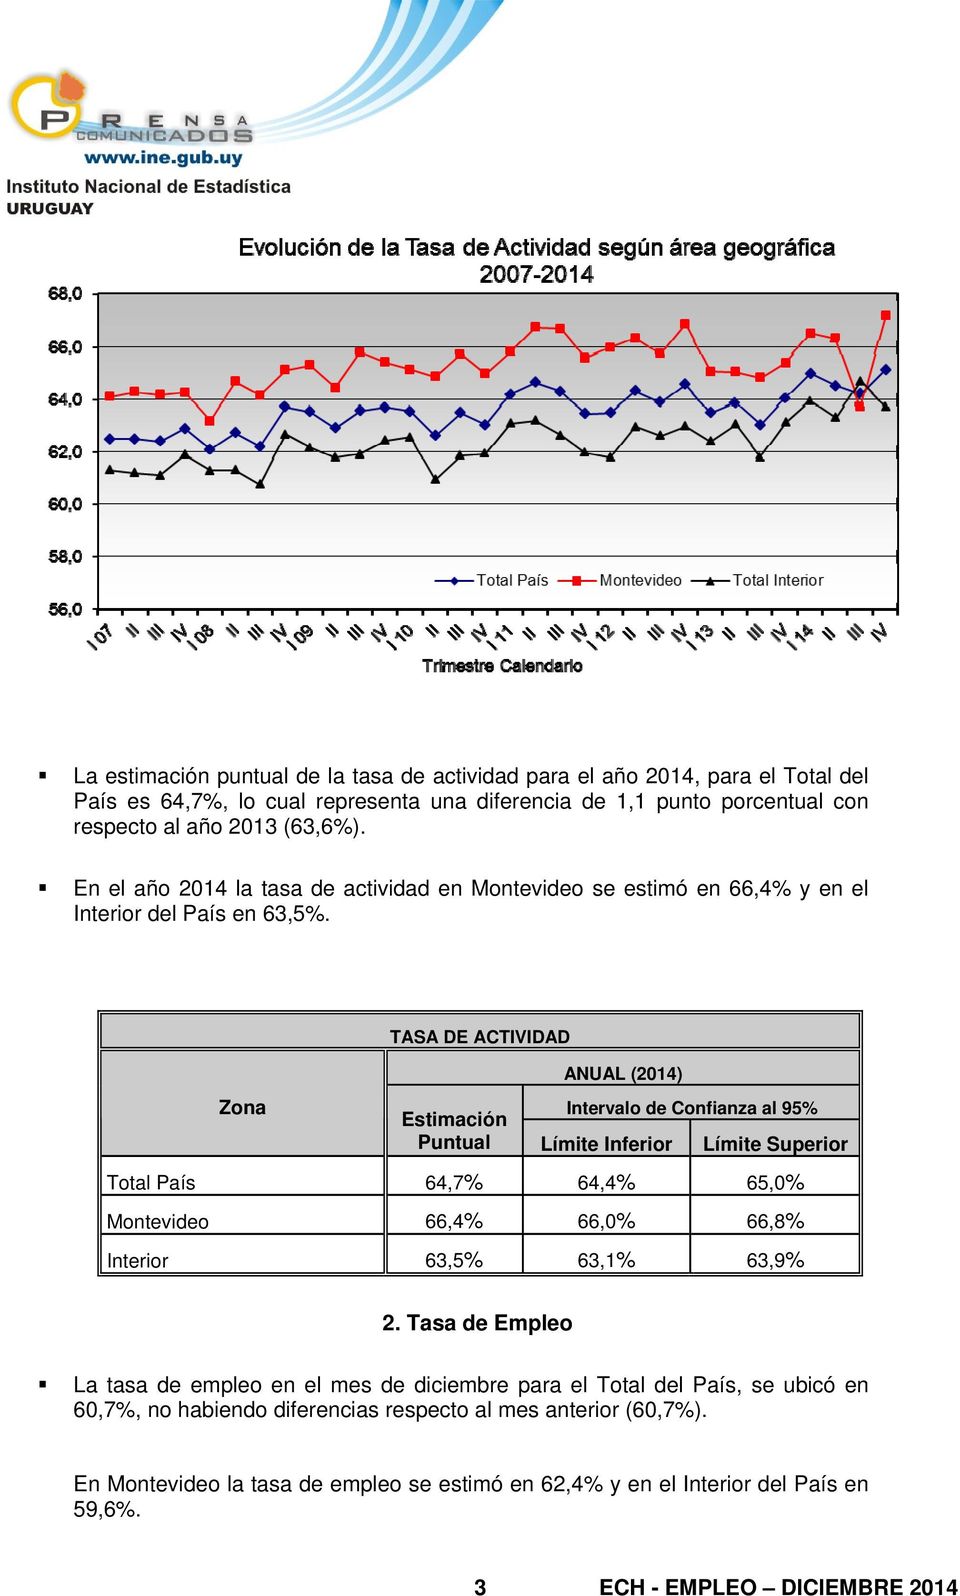 TASA DE ACTIVIDAD Zona ANUAL (2014) Intervalo de Confianza al 95% Puntual Límite Inferior Límite Superior Total País 64,7% 64,4% 65,0% Montevideo 66,4% 66,0% 66,8% Interior 63,5% 63,1% 63,9%